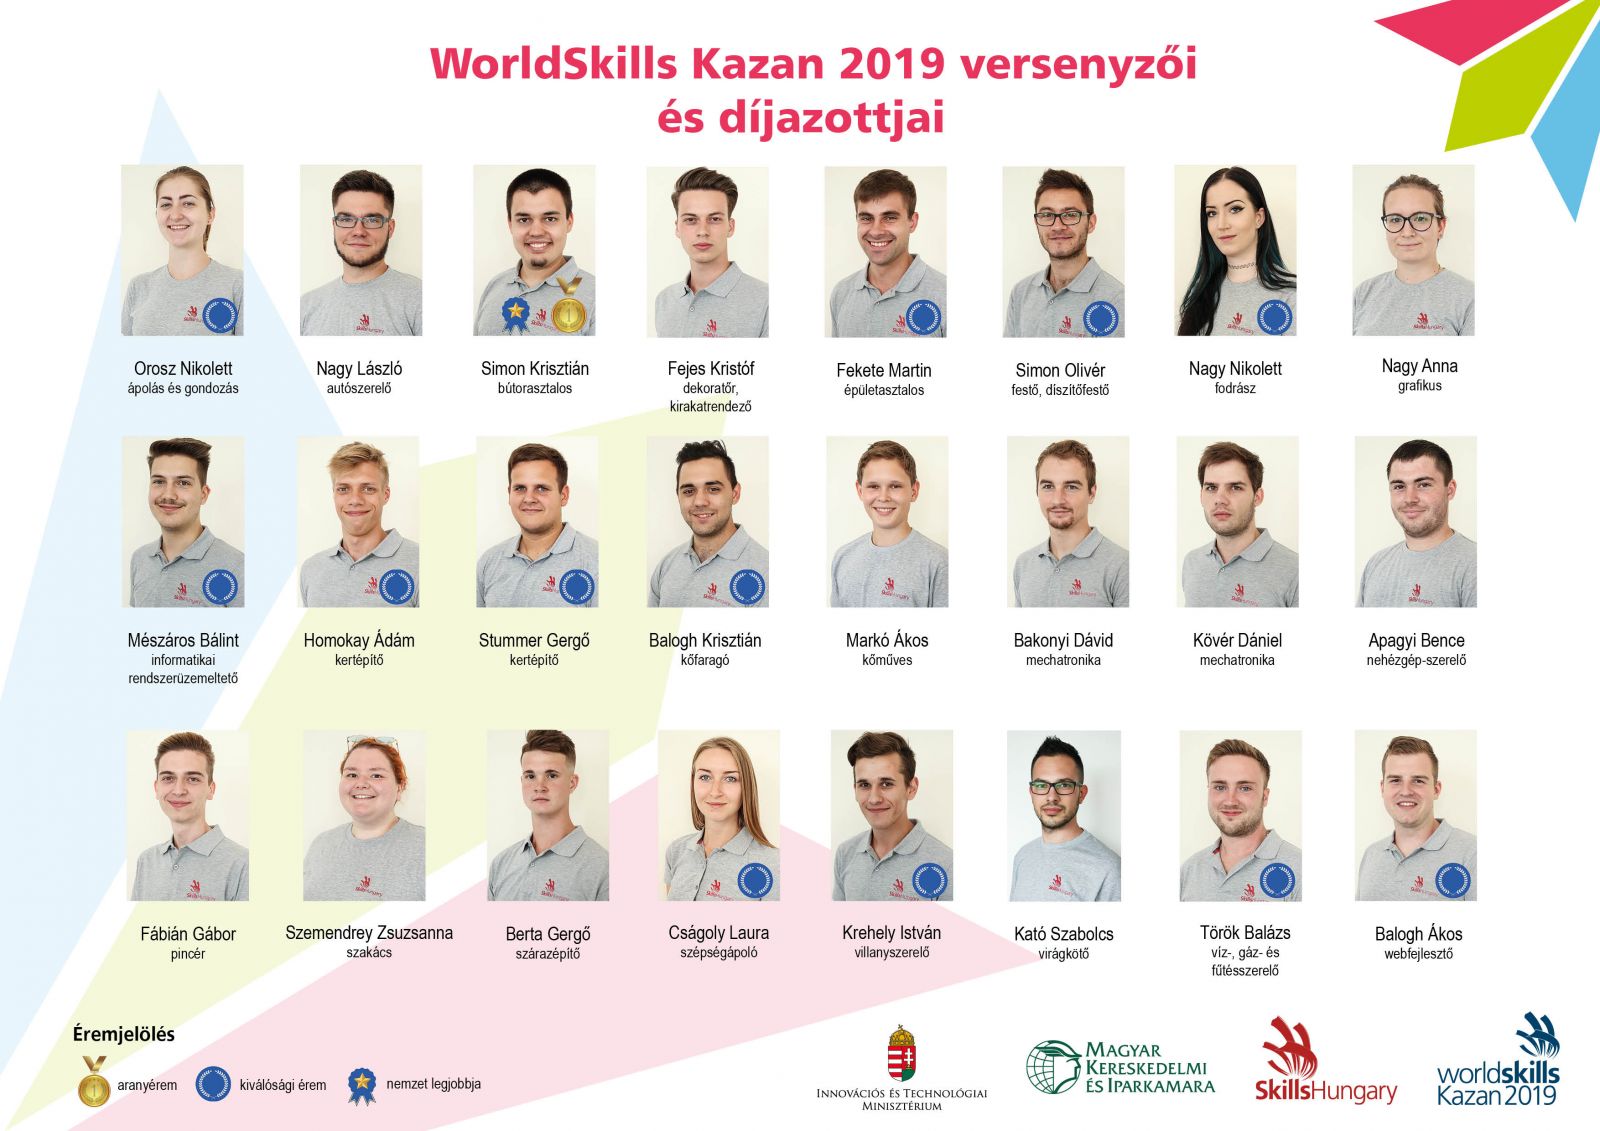 Aranyérmet szerzett Simon Krisztián bútorasztalos a 45. WorldSkills versenyen